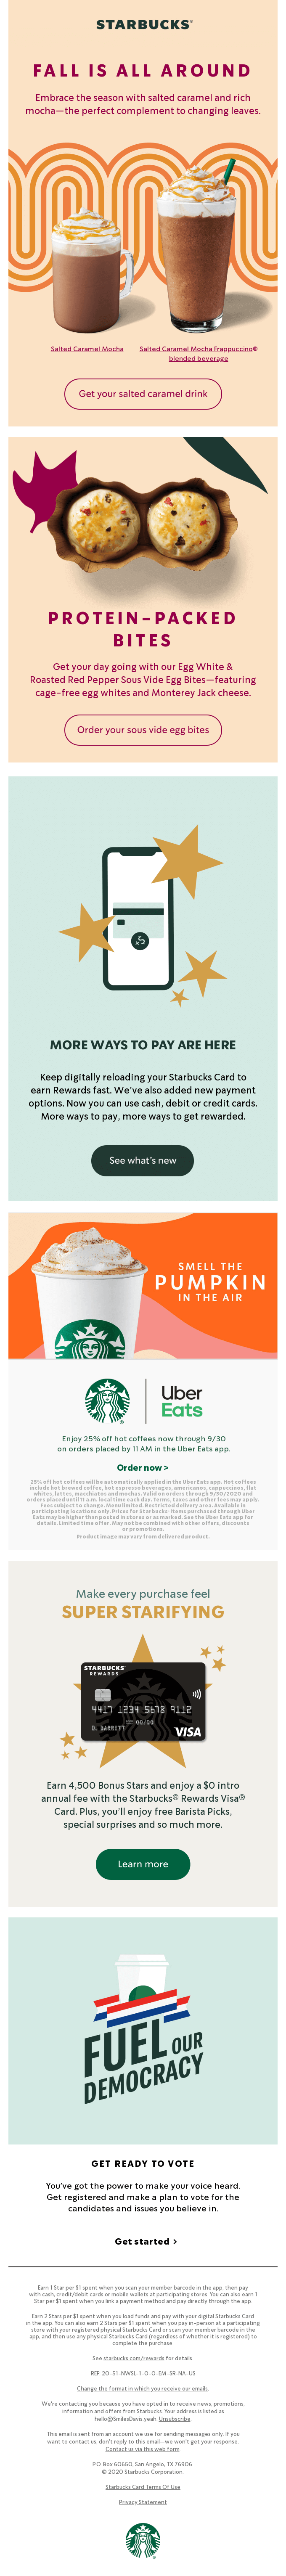 Fall for salted caramel - Starbucks Email Newsletter